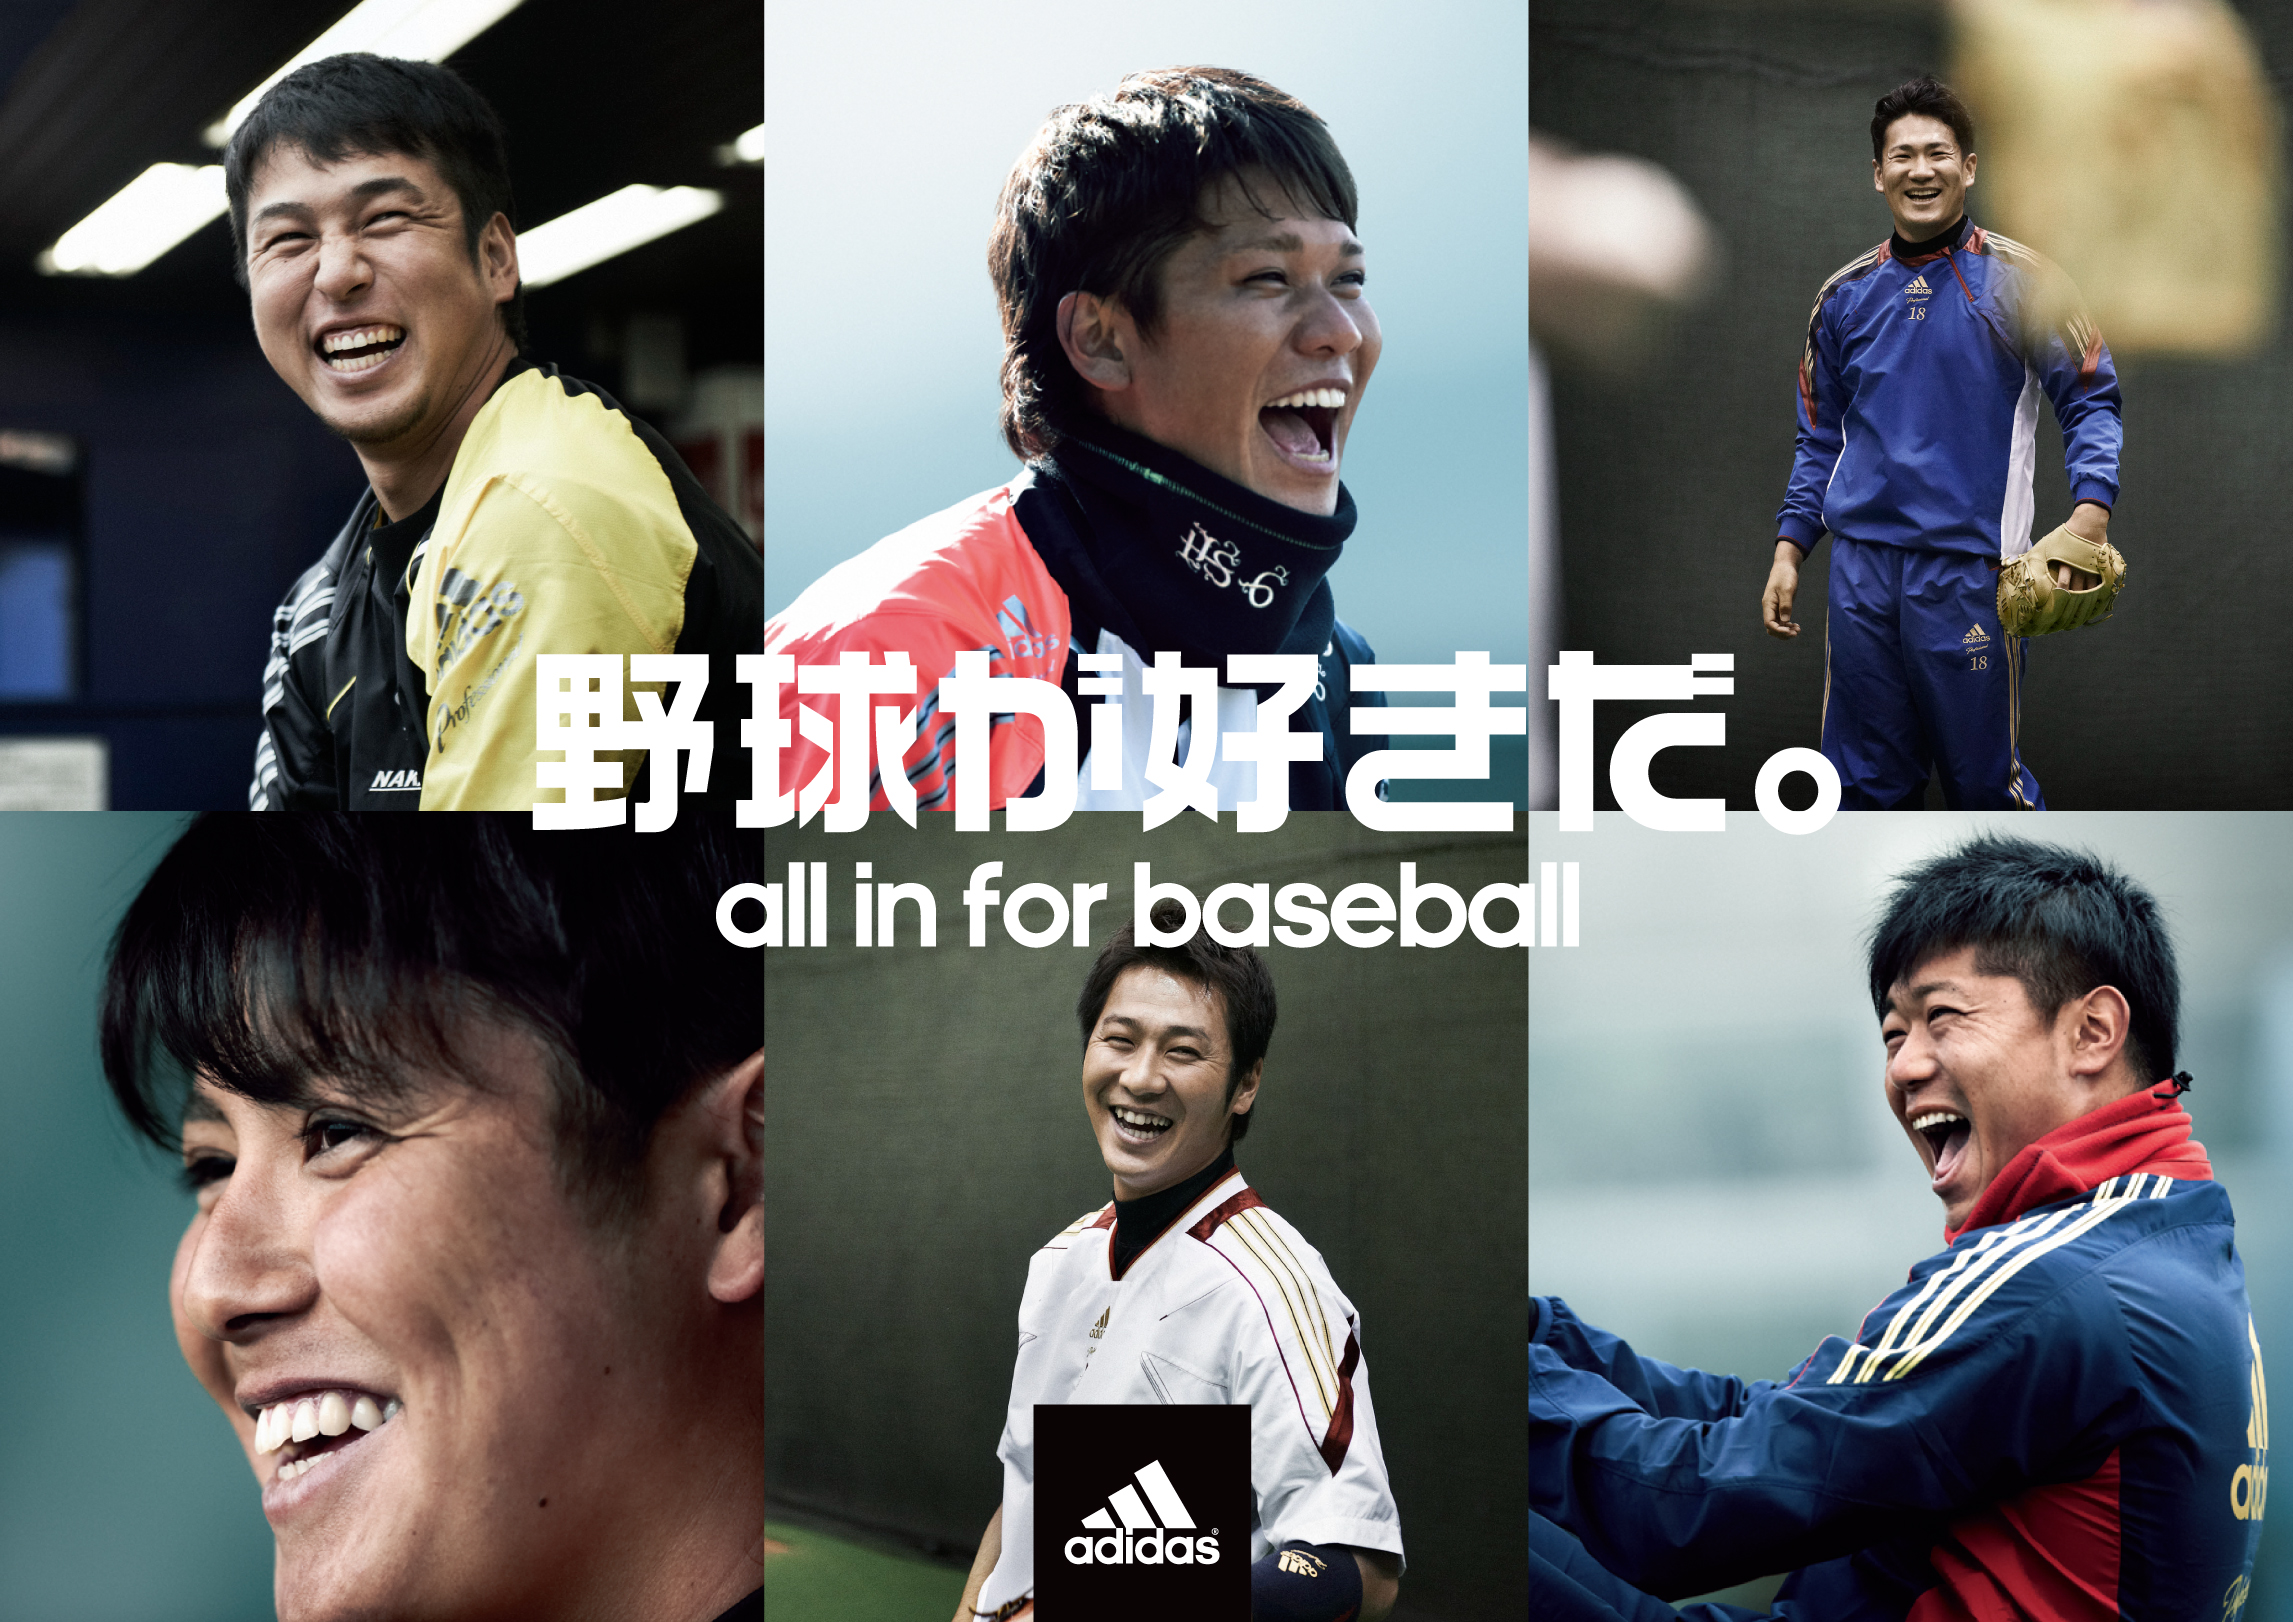 Adidas Baseball13 野球が好きだ キャンペーンを開始 アディダス ジャパン株式会社のプレスリリース